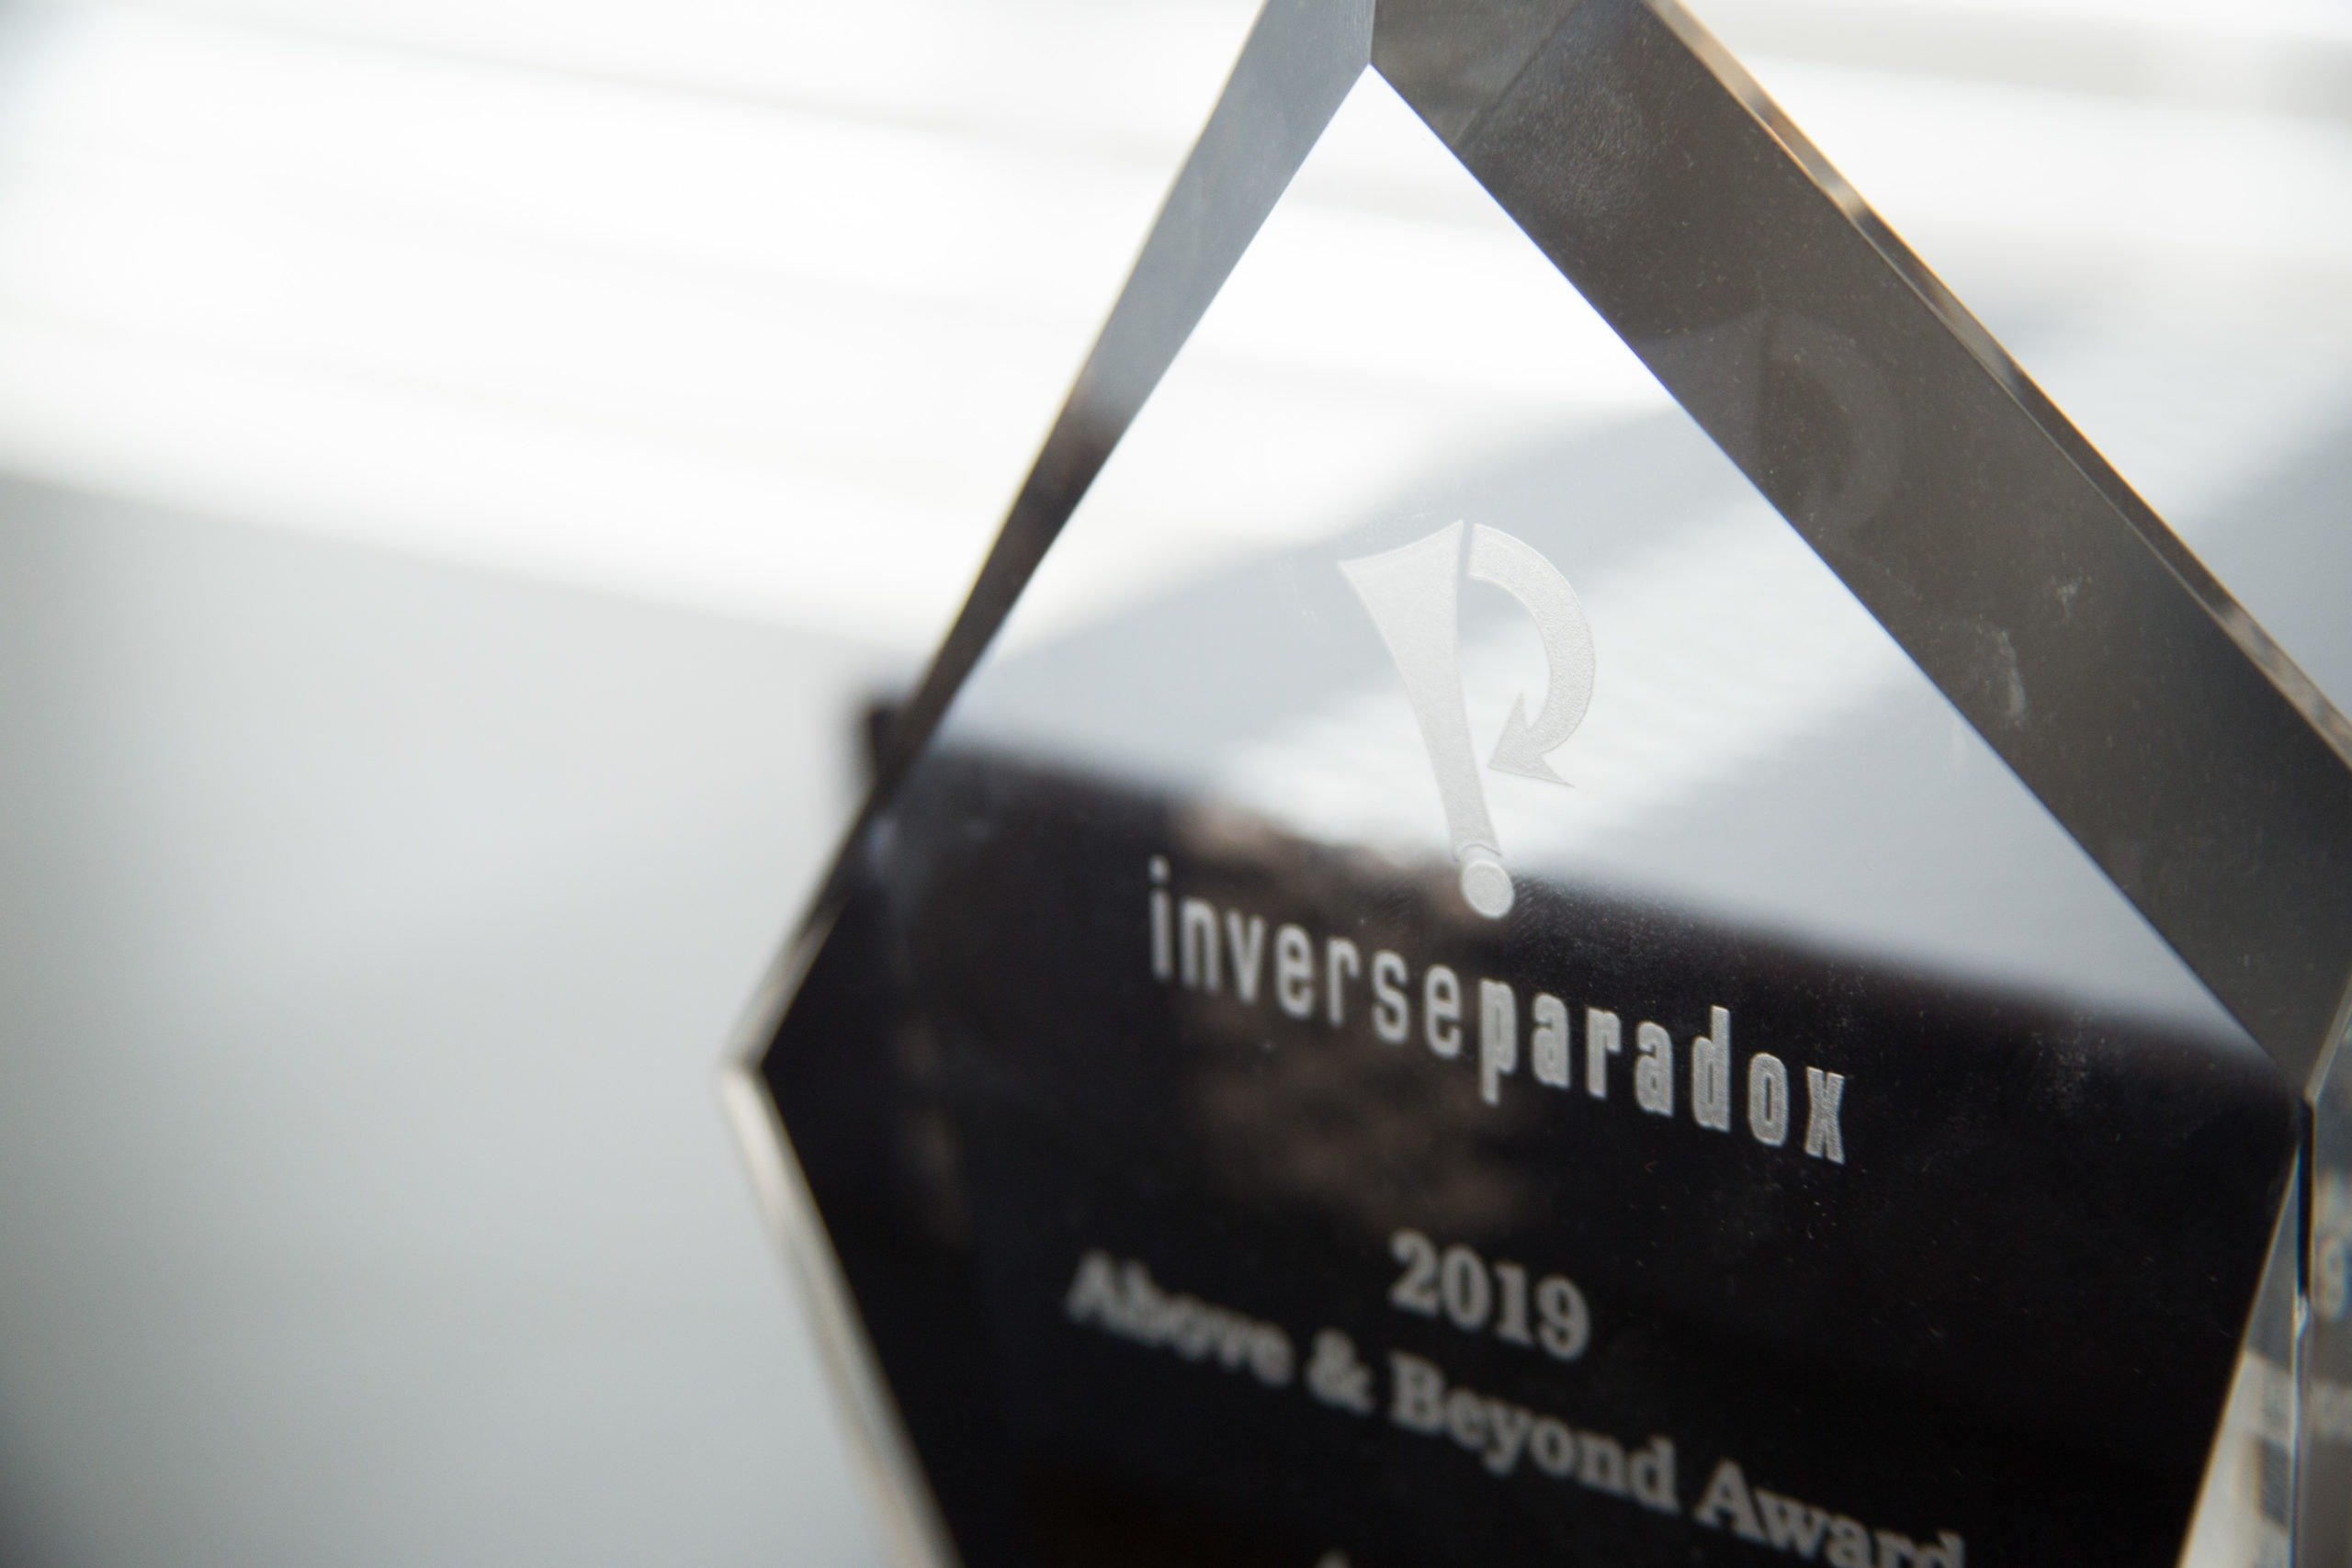 close up of inverse paradox award